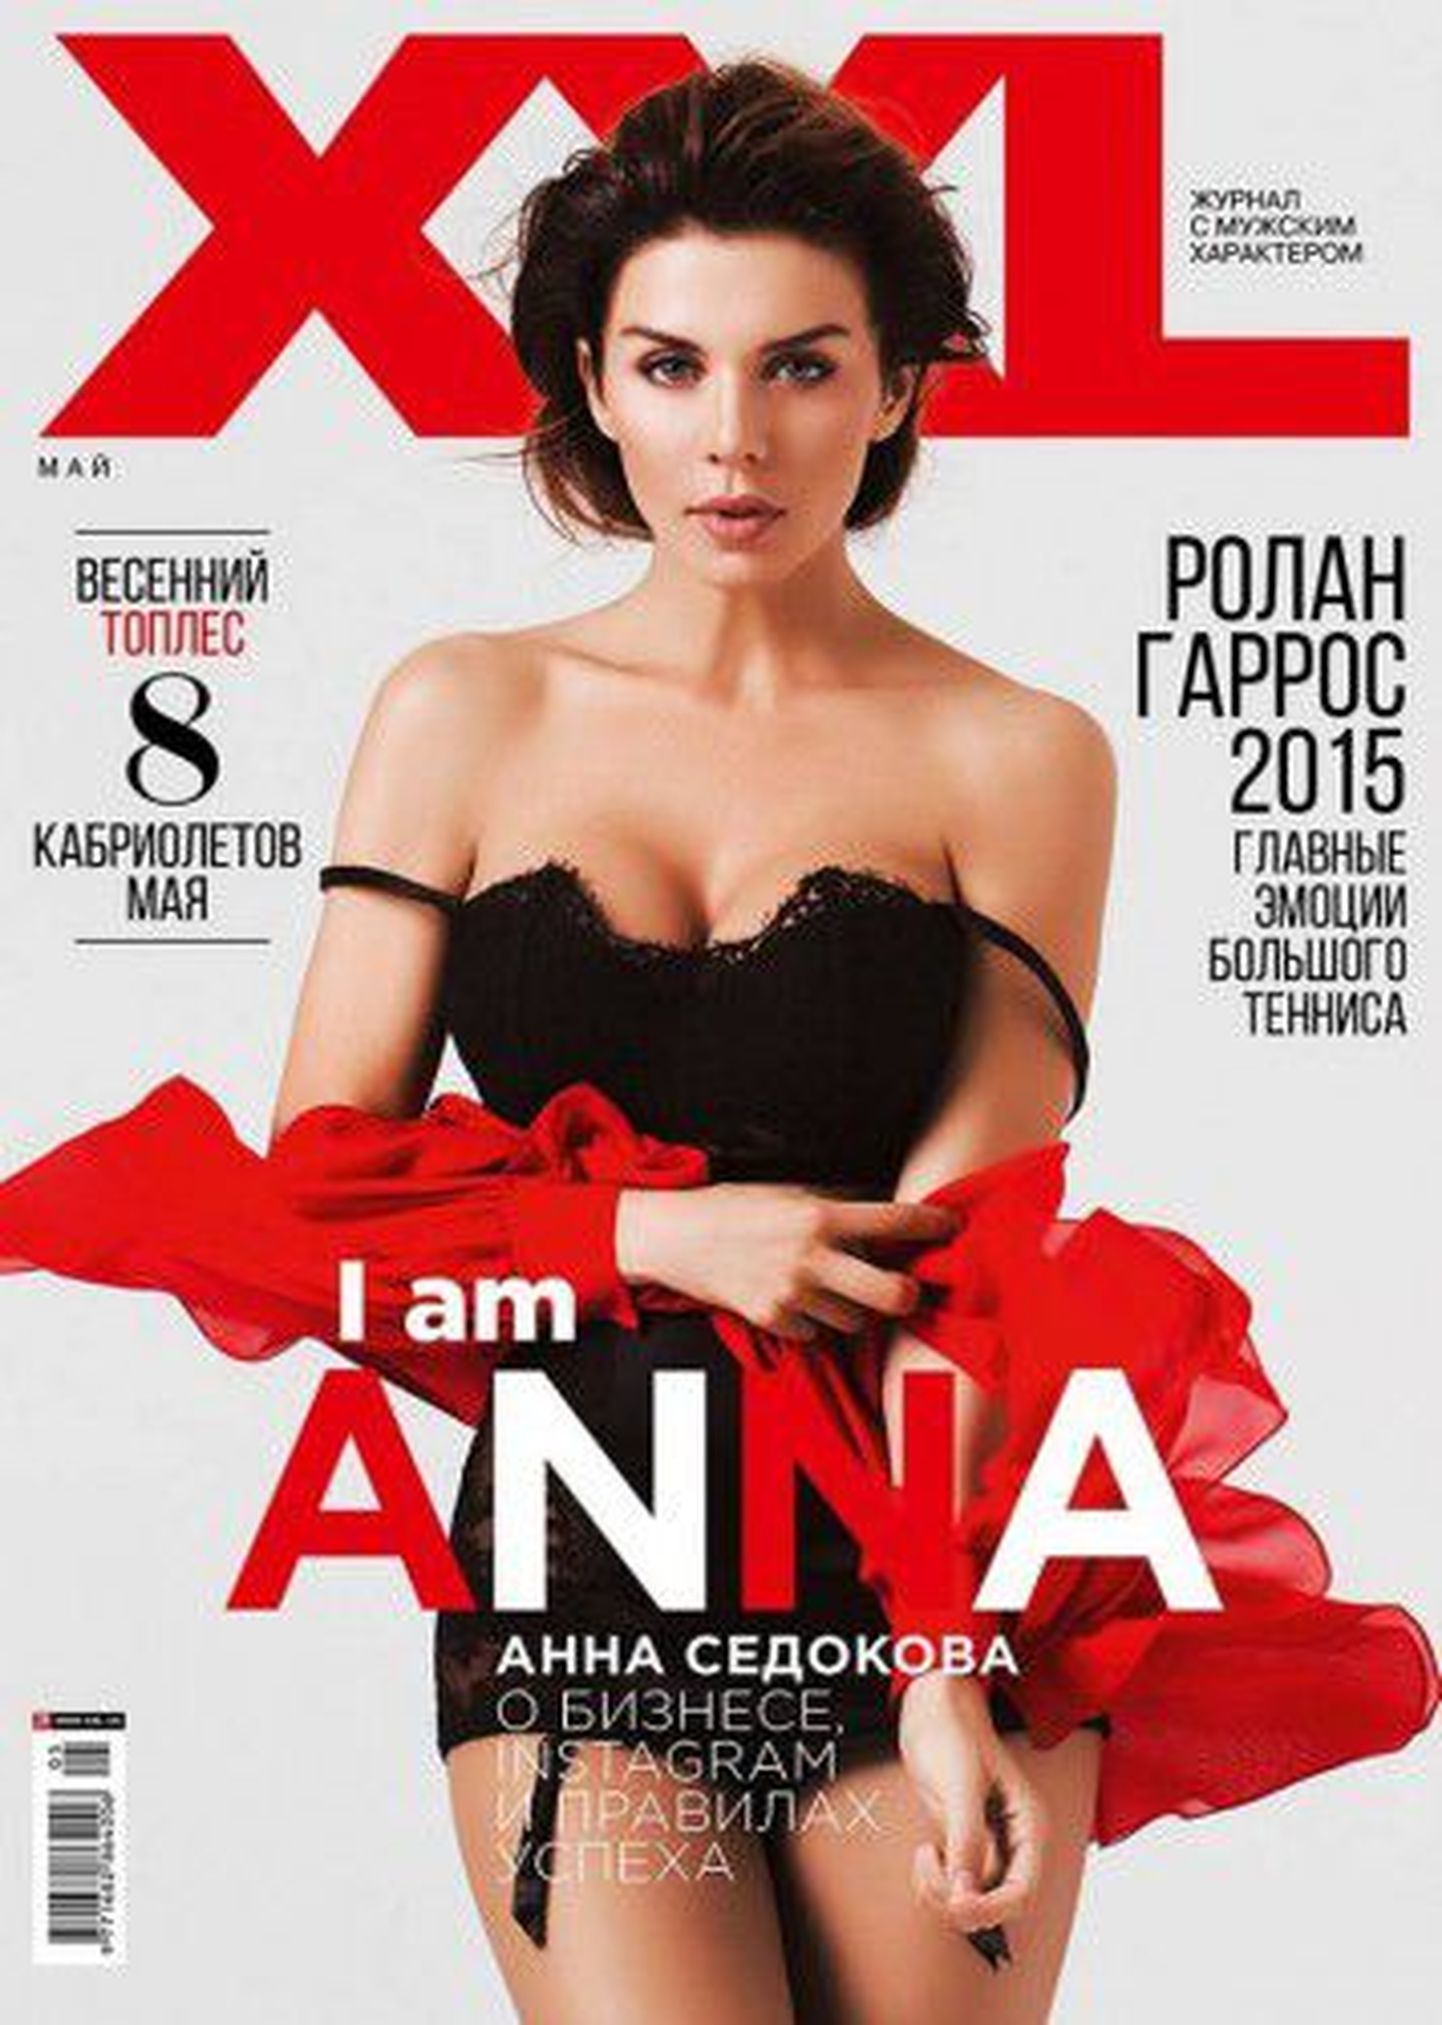 Анна Седокова на обложке эротического журнала.